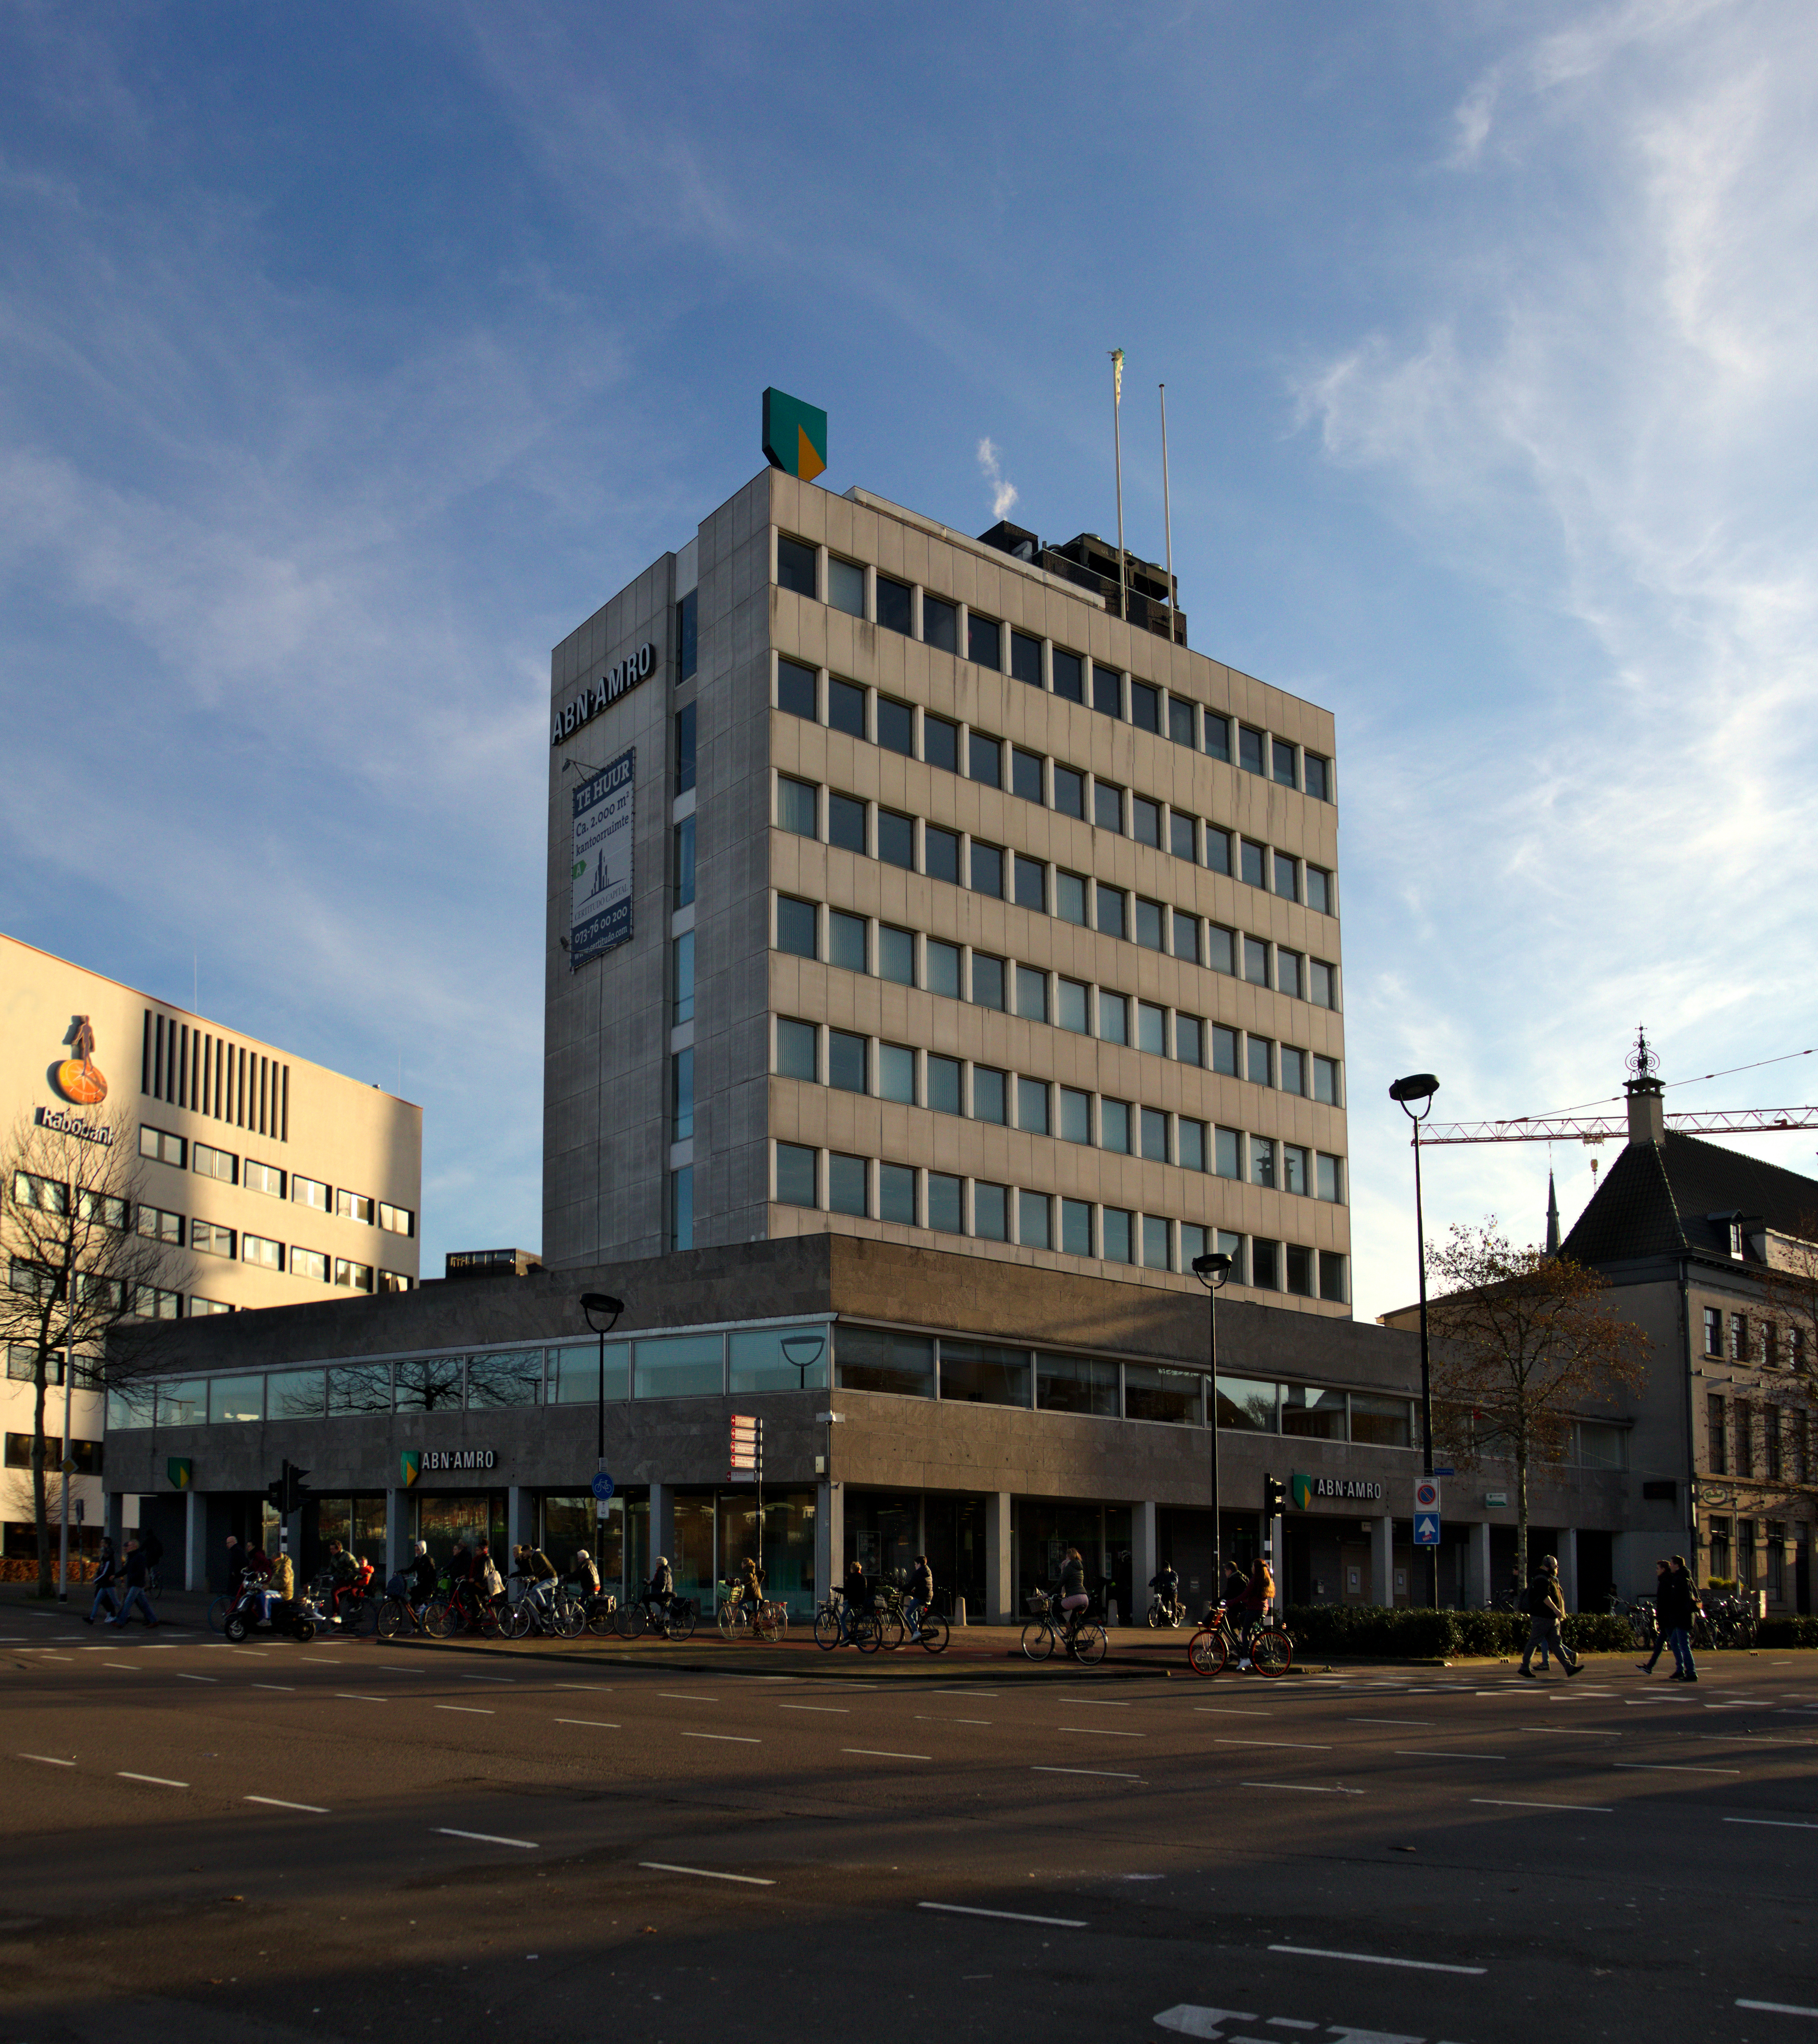 Uittrekken kast Figuur File:Tilburg - Kantoor Amrobank.jpg - Wikimedia Commons